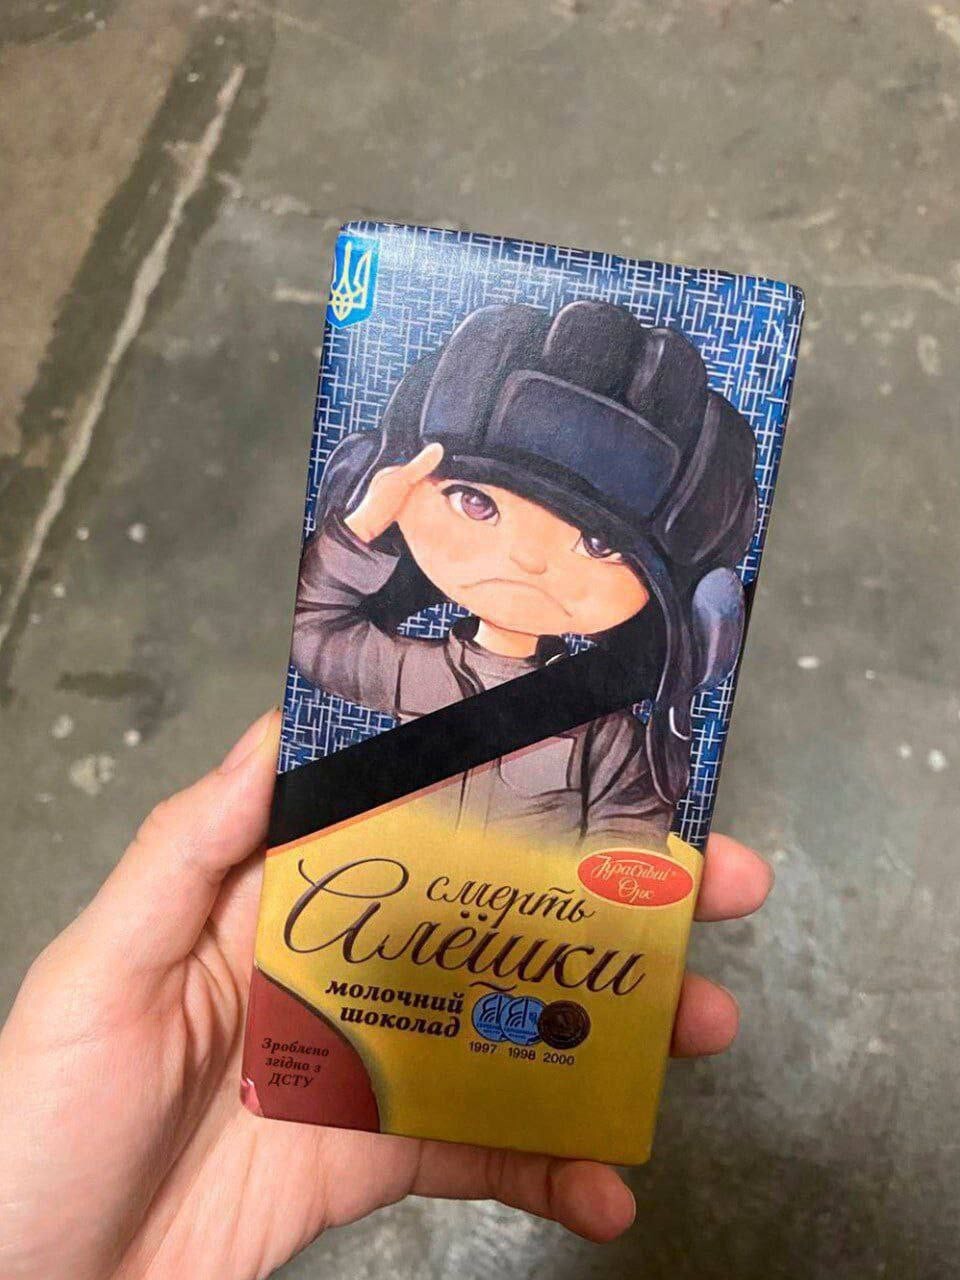 Шоколадка «Смерть Алёшки» появилась на прилавках магазинов Киева? Подскажите есть ли ещё нация на земле которая желает смерти даже детям?